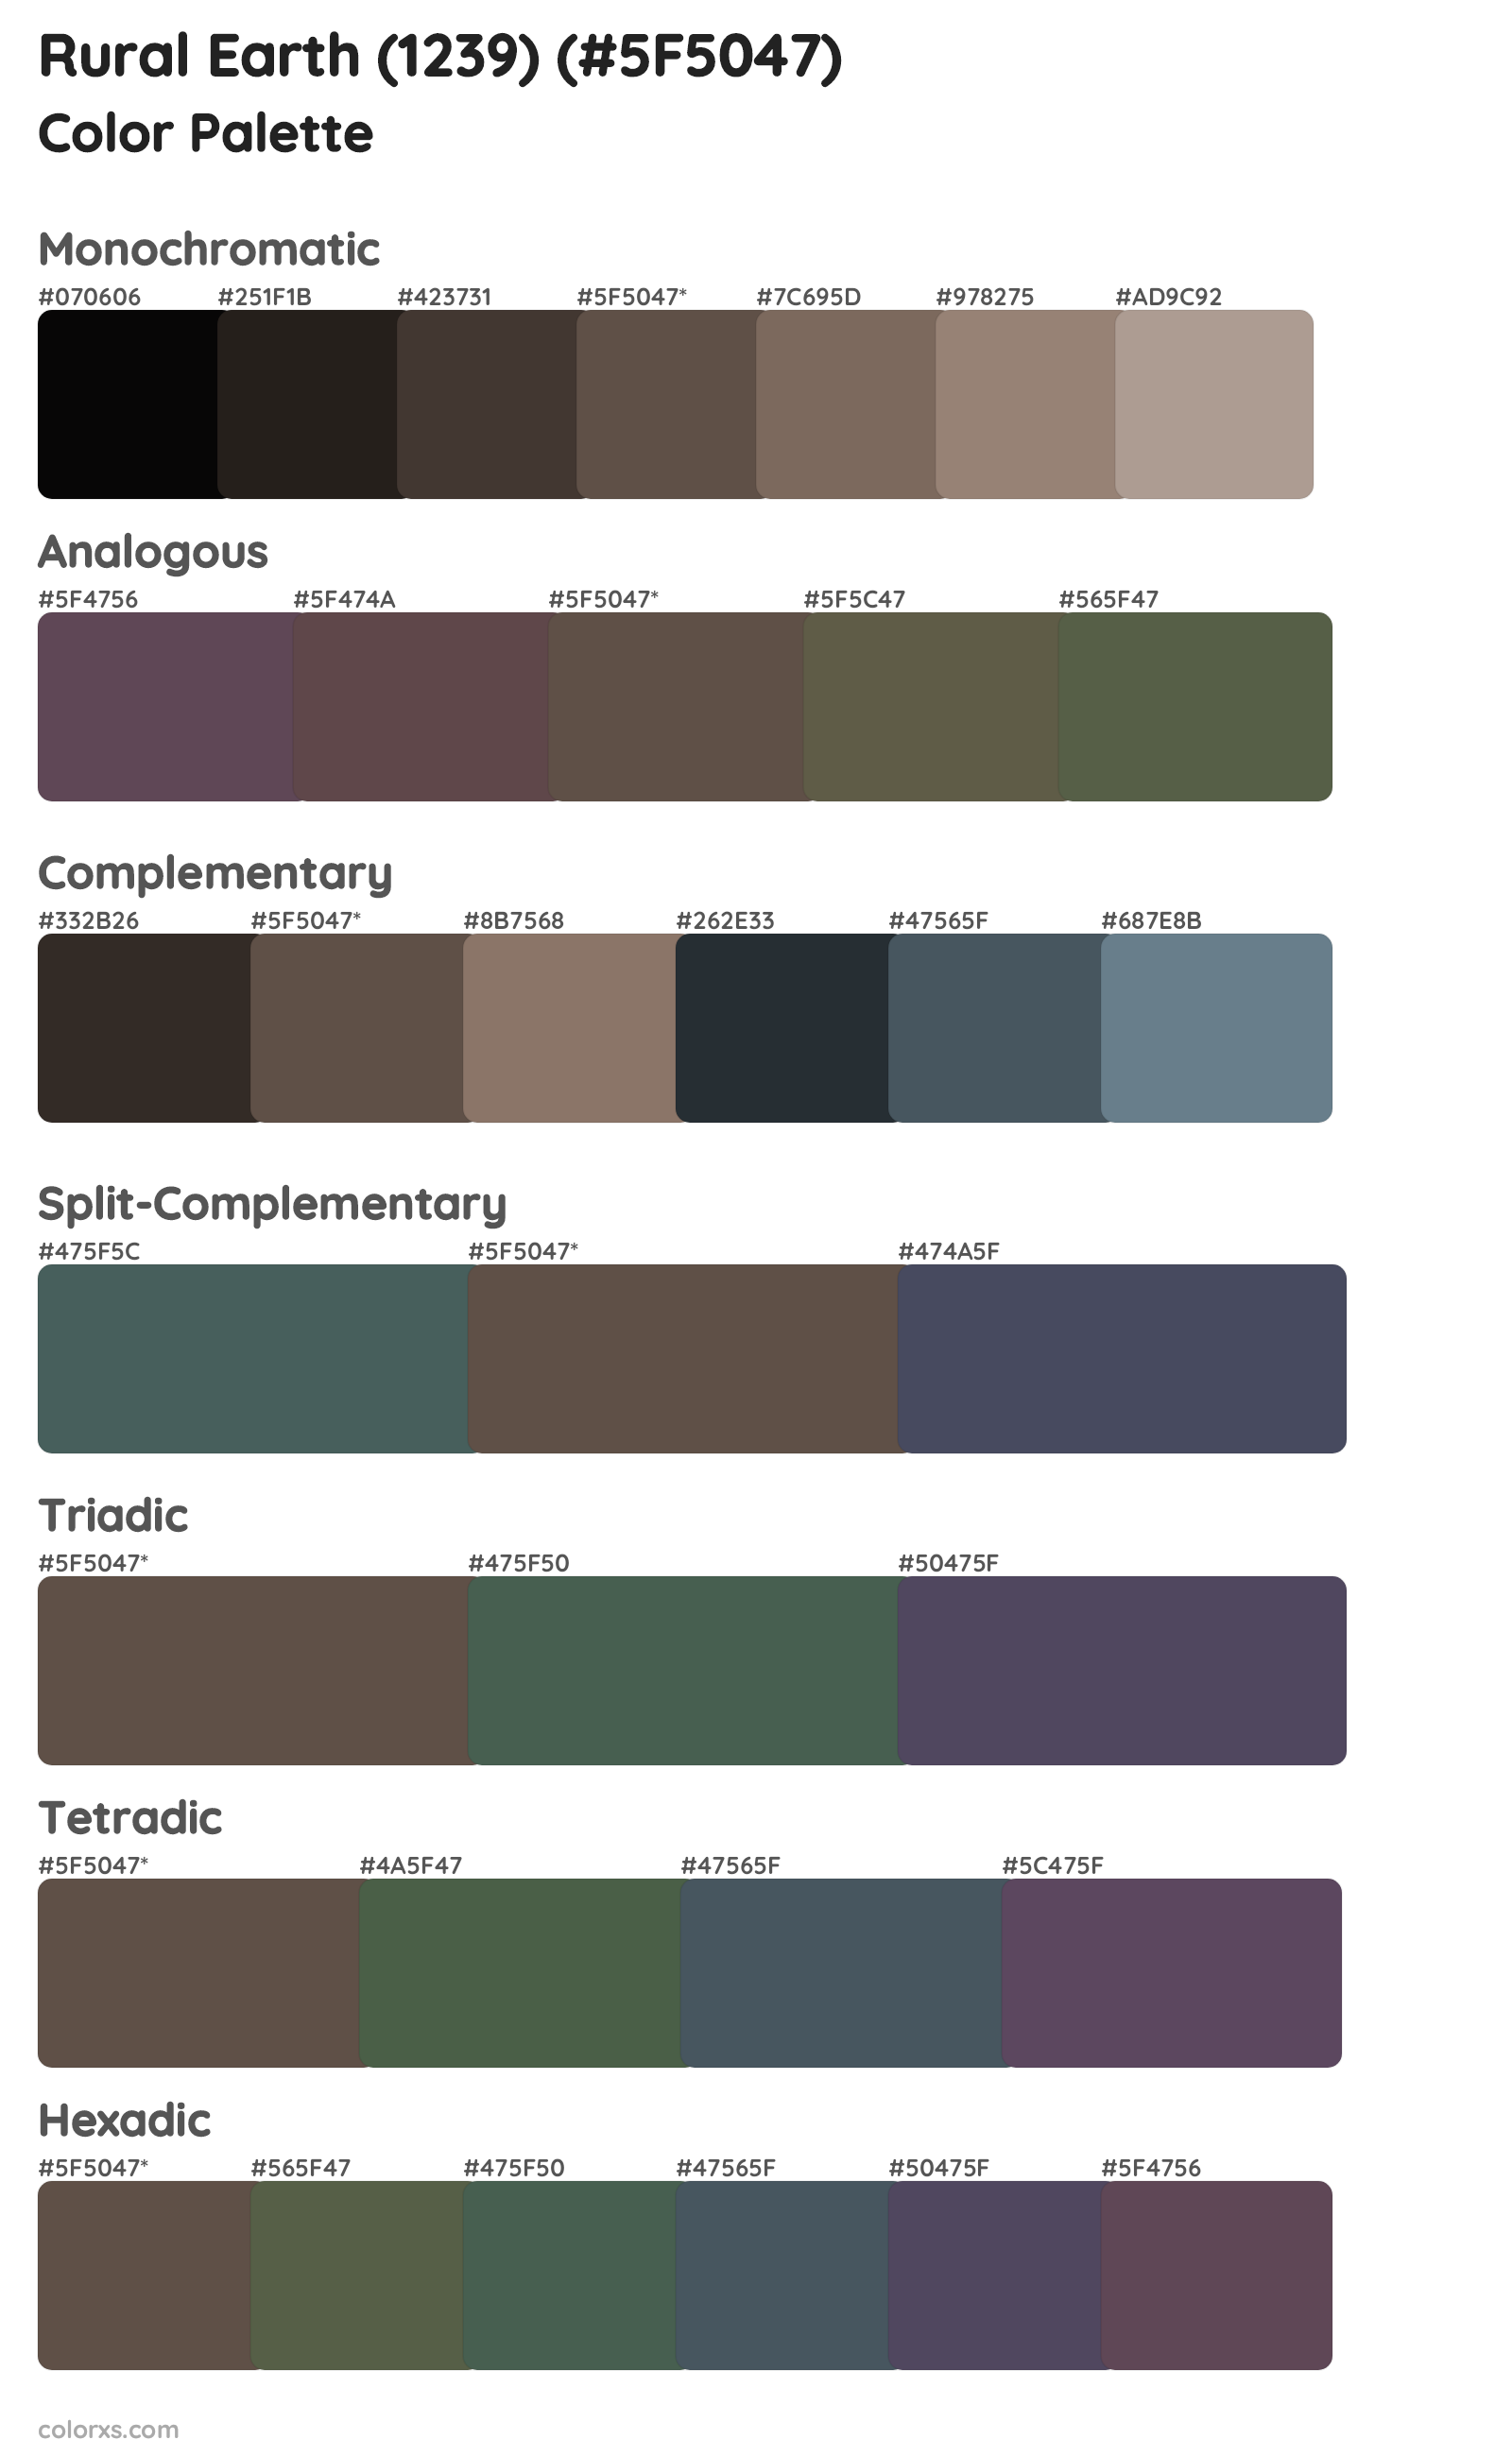 Rural Earth (1239) Color Scheme Palettes